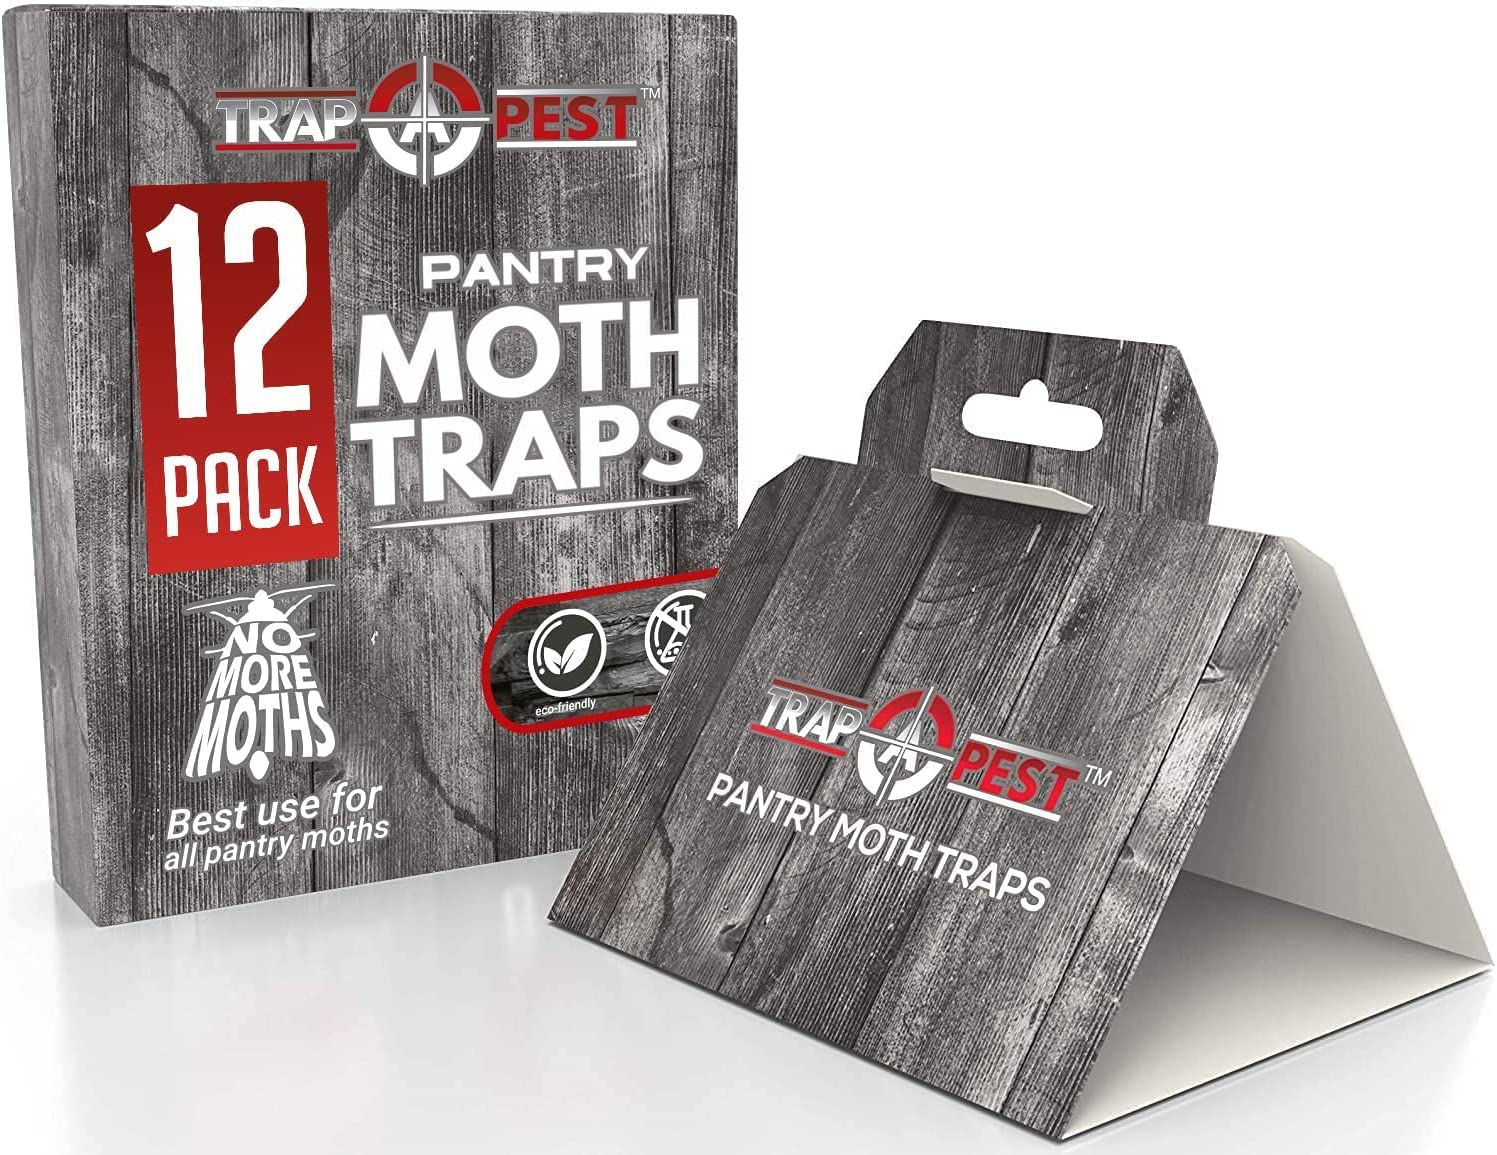 Terro Pantry Moth Trap Box